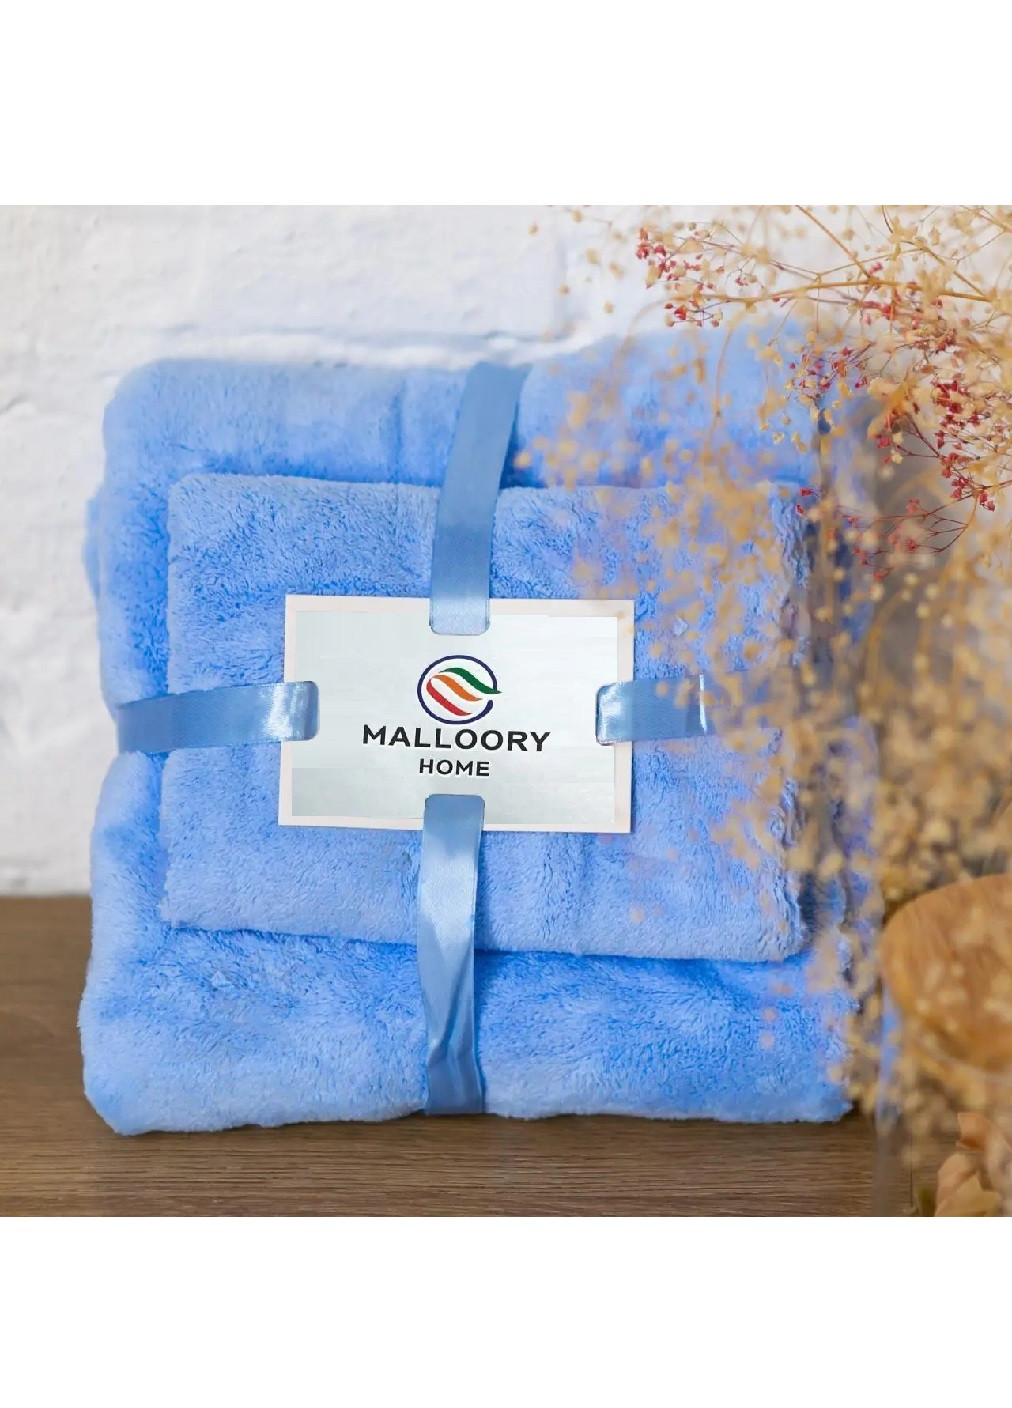 Unbranded подарочный набор полотенец из микрофибры для бани для лица (473776-prob) голубой однотонный голубой производство -